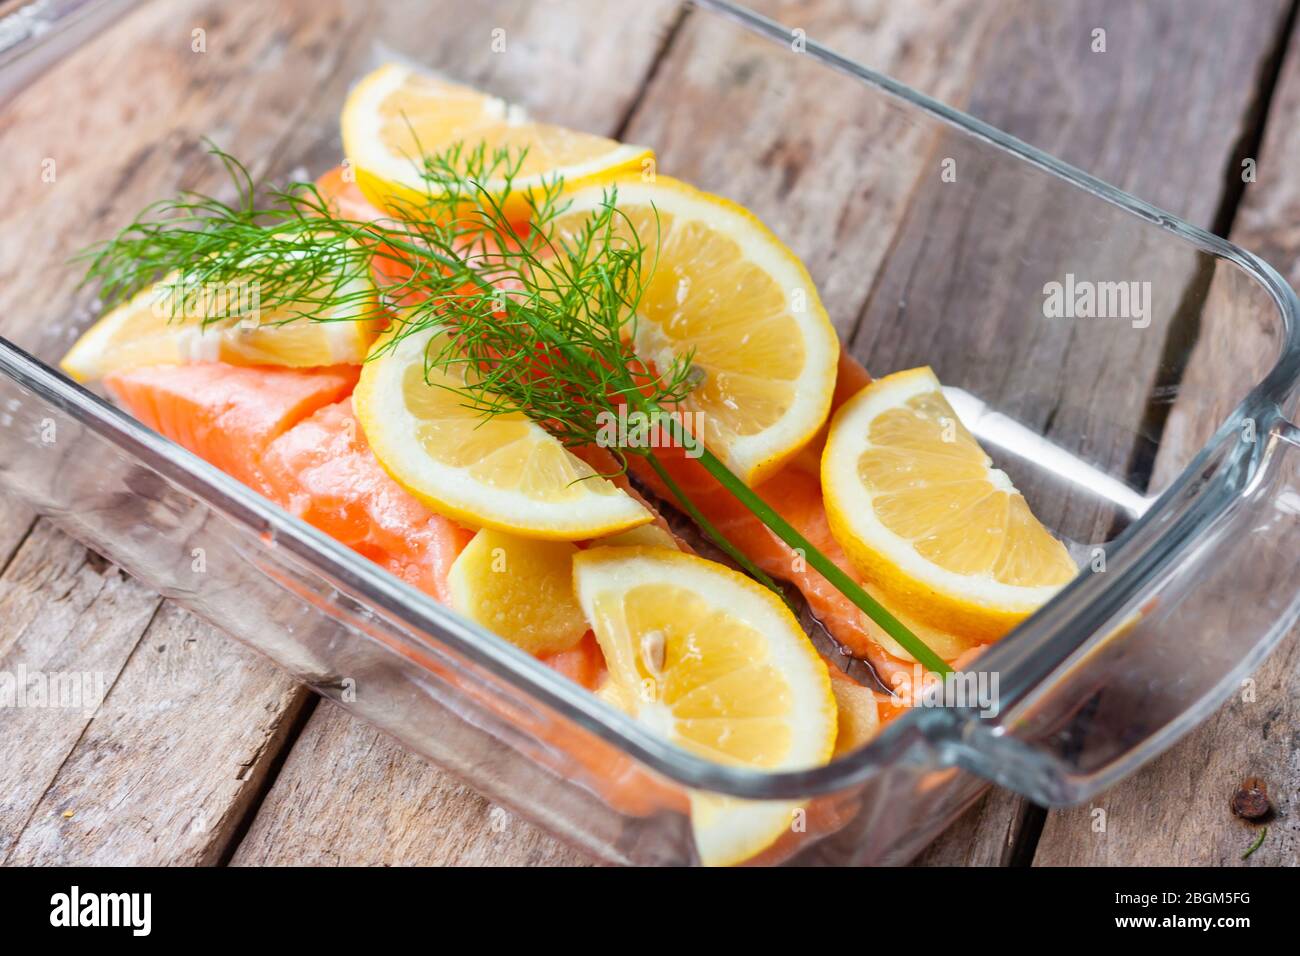 Filetti di pesce rosso o salmone in vetro da forno su sfondo di legno. Pesce fresco, limone e aneto per cucinare gli ingredienti. Foto Stock